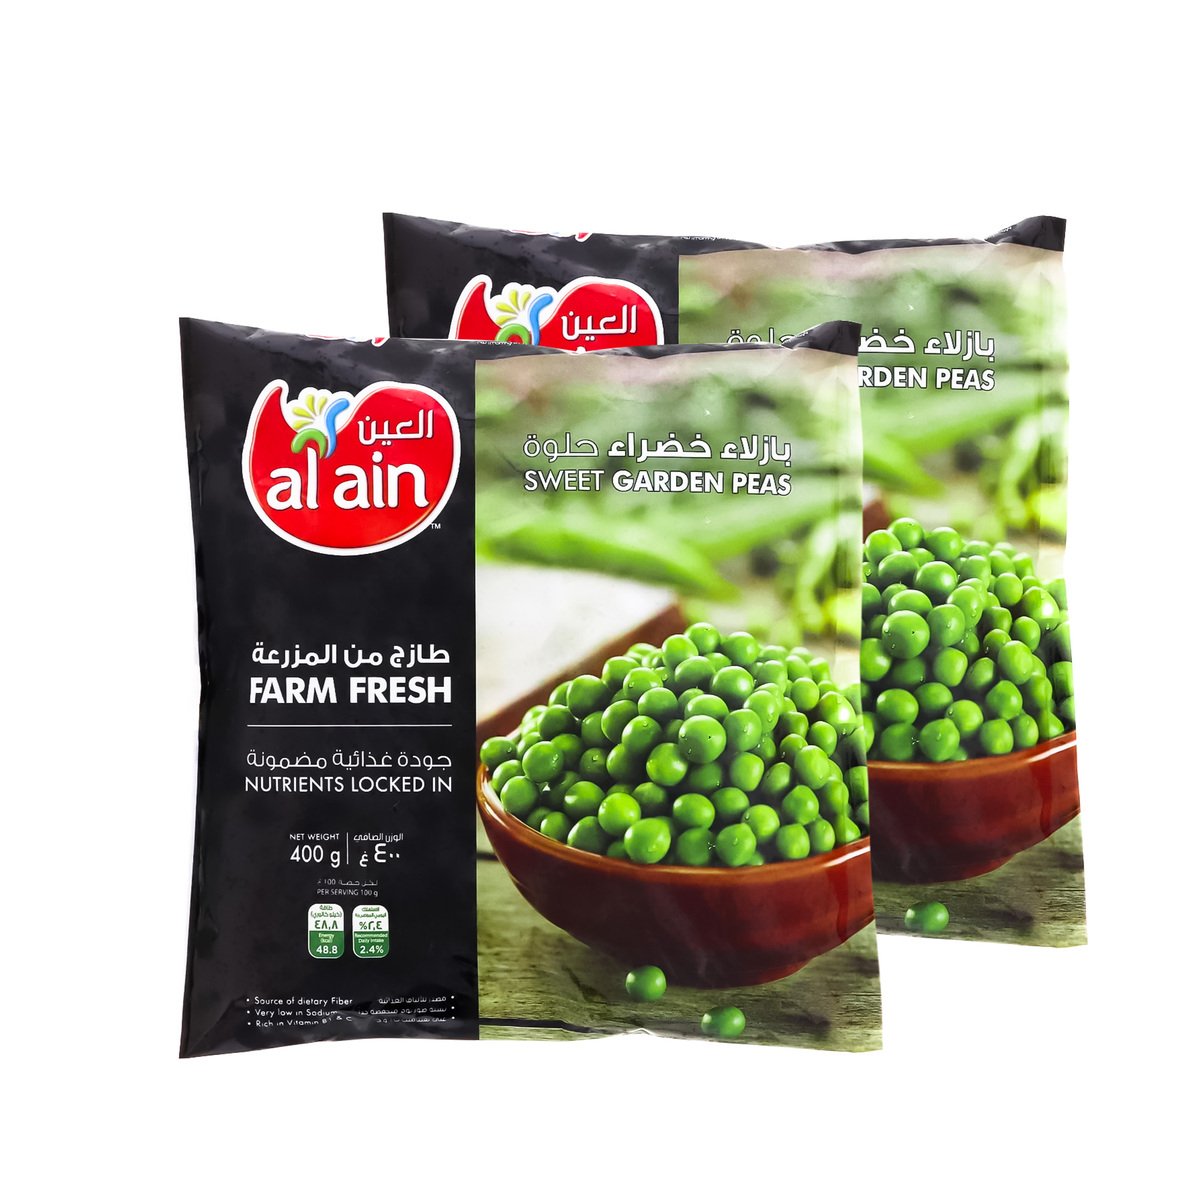 اشتري قم بشراء Al Ain Sweet Garden Peas Value Pack 2 x 400 g Online at Best Price من الموقع - من لولو هايبر ماركت Green Peas في الامارات